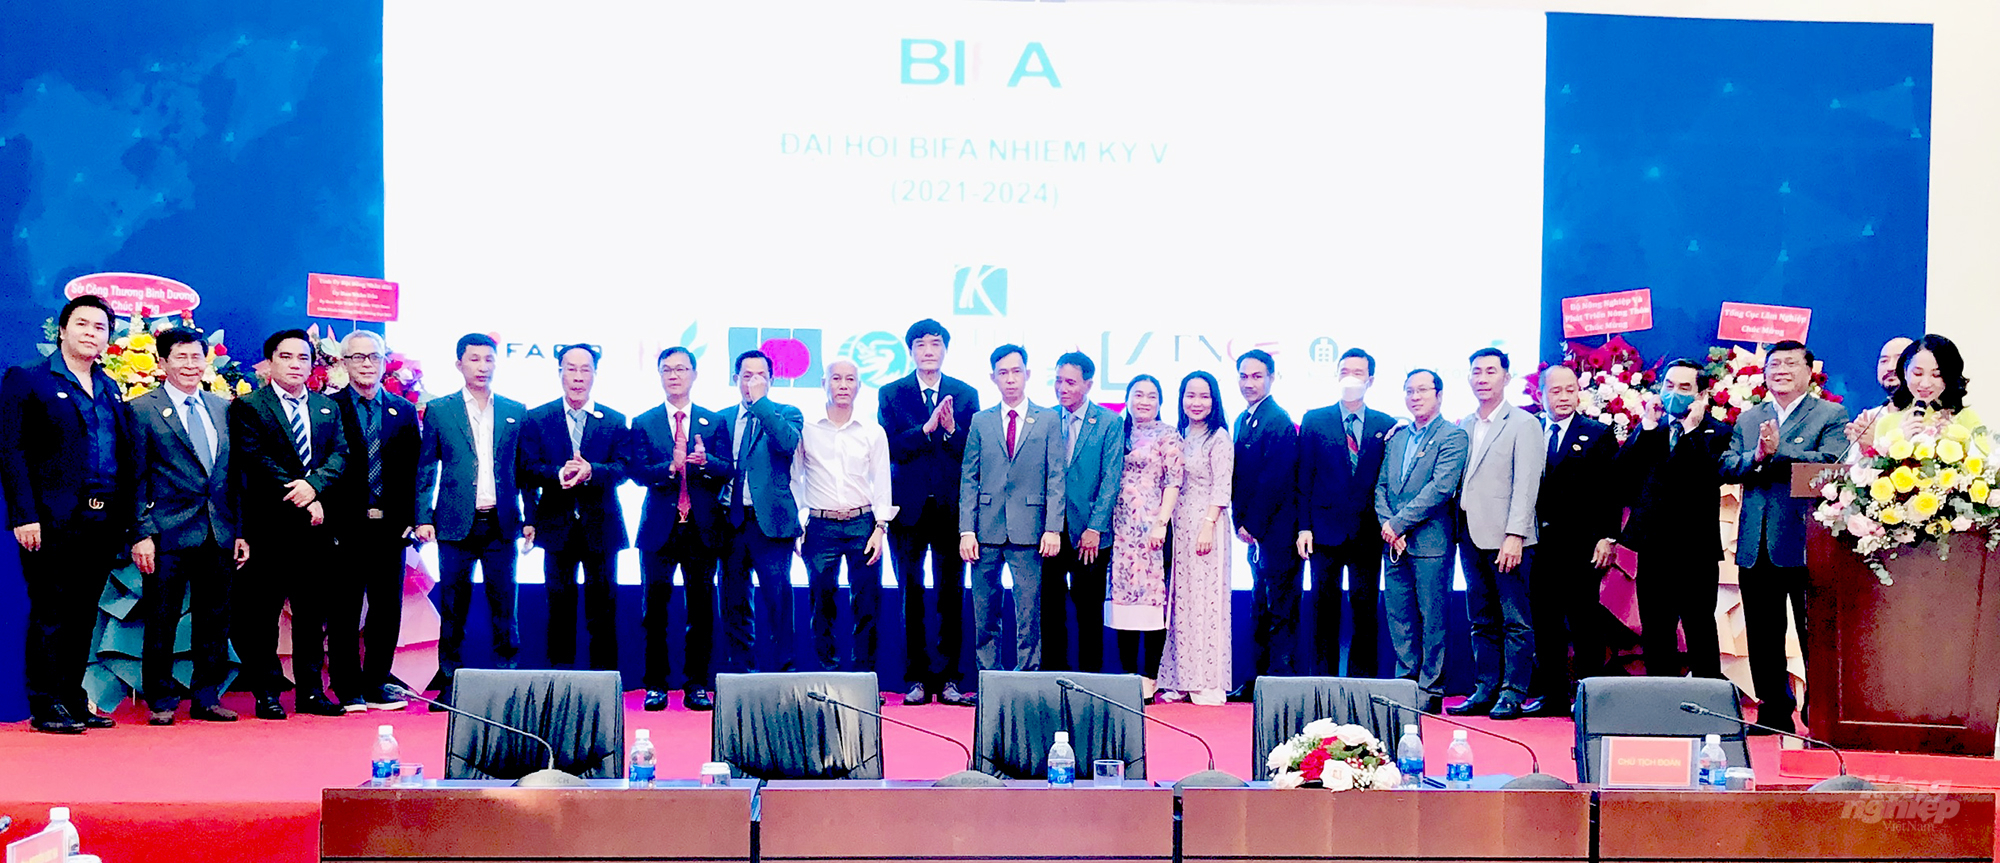 Ban chấp hành BIFA Nhiệm kỳ V (2021 -2024) ra mắt Đại hội. Ảnh: Minh Sáng.